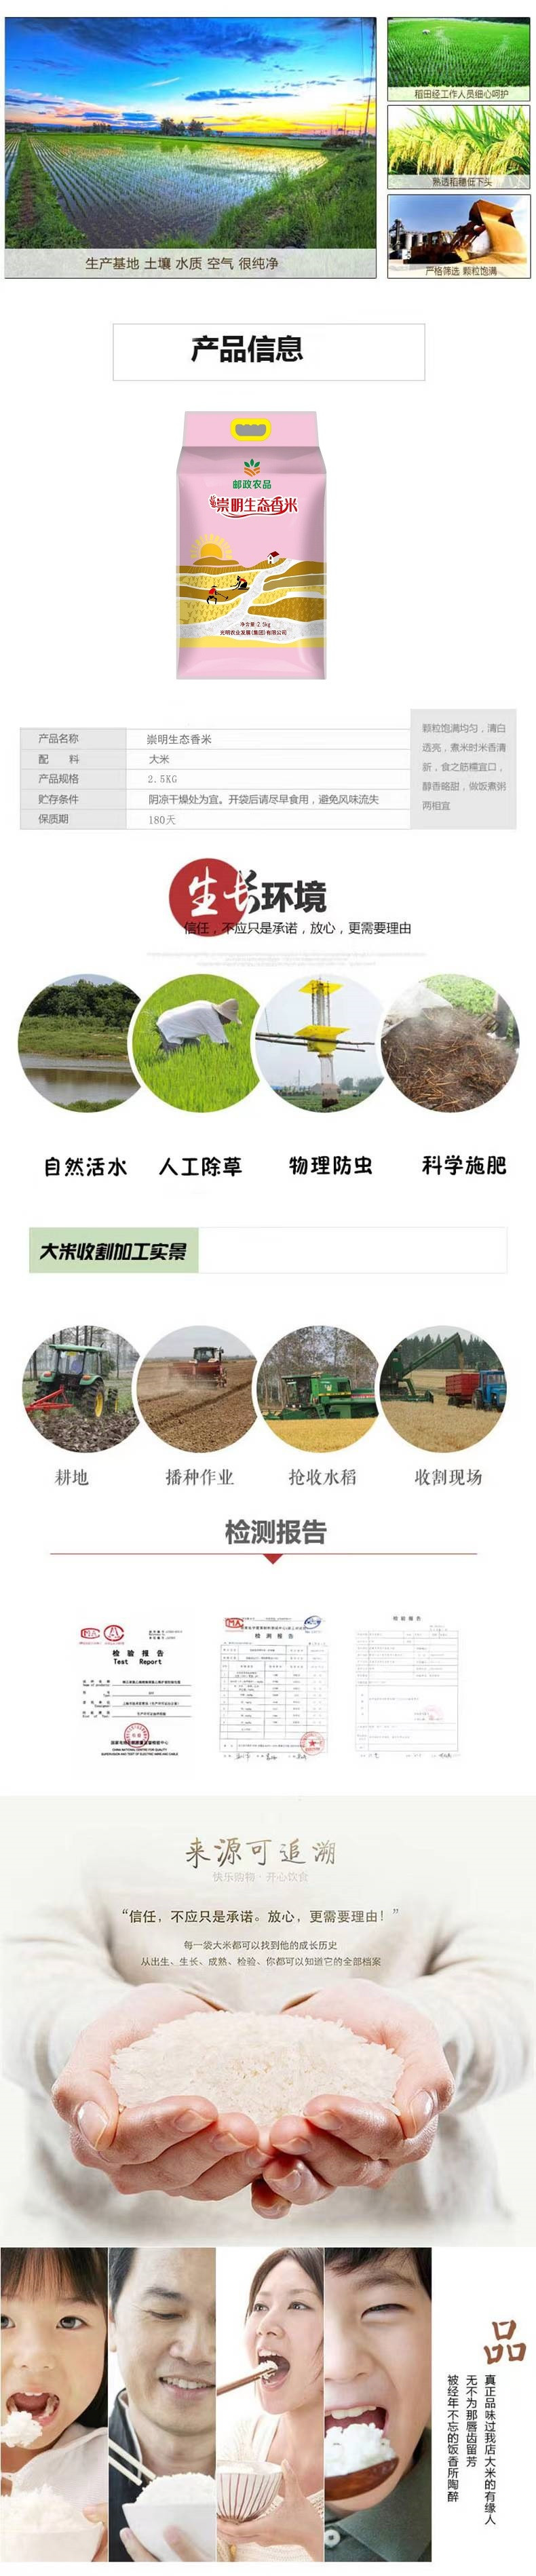  【上海邮政】崇明生态香米 2.5kg  邮政农品